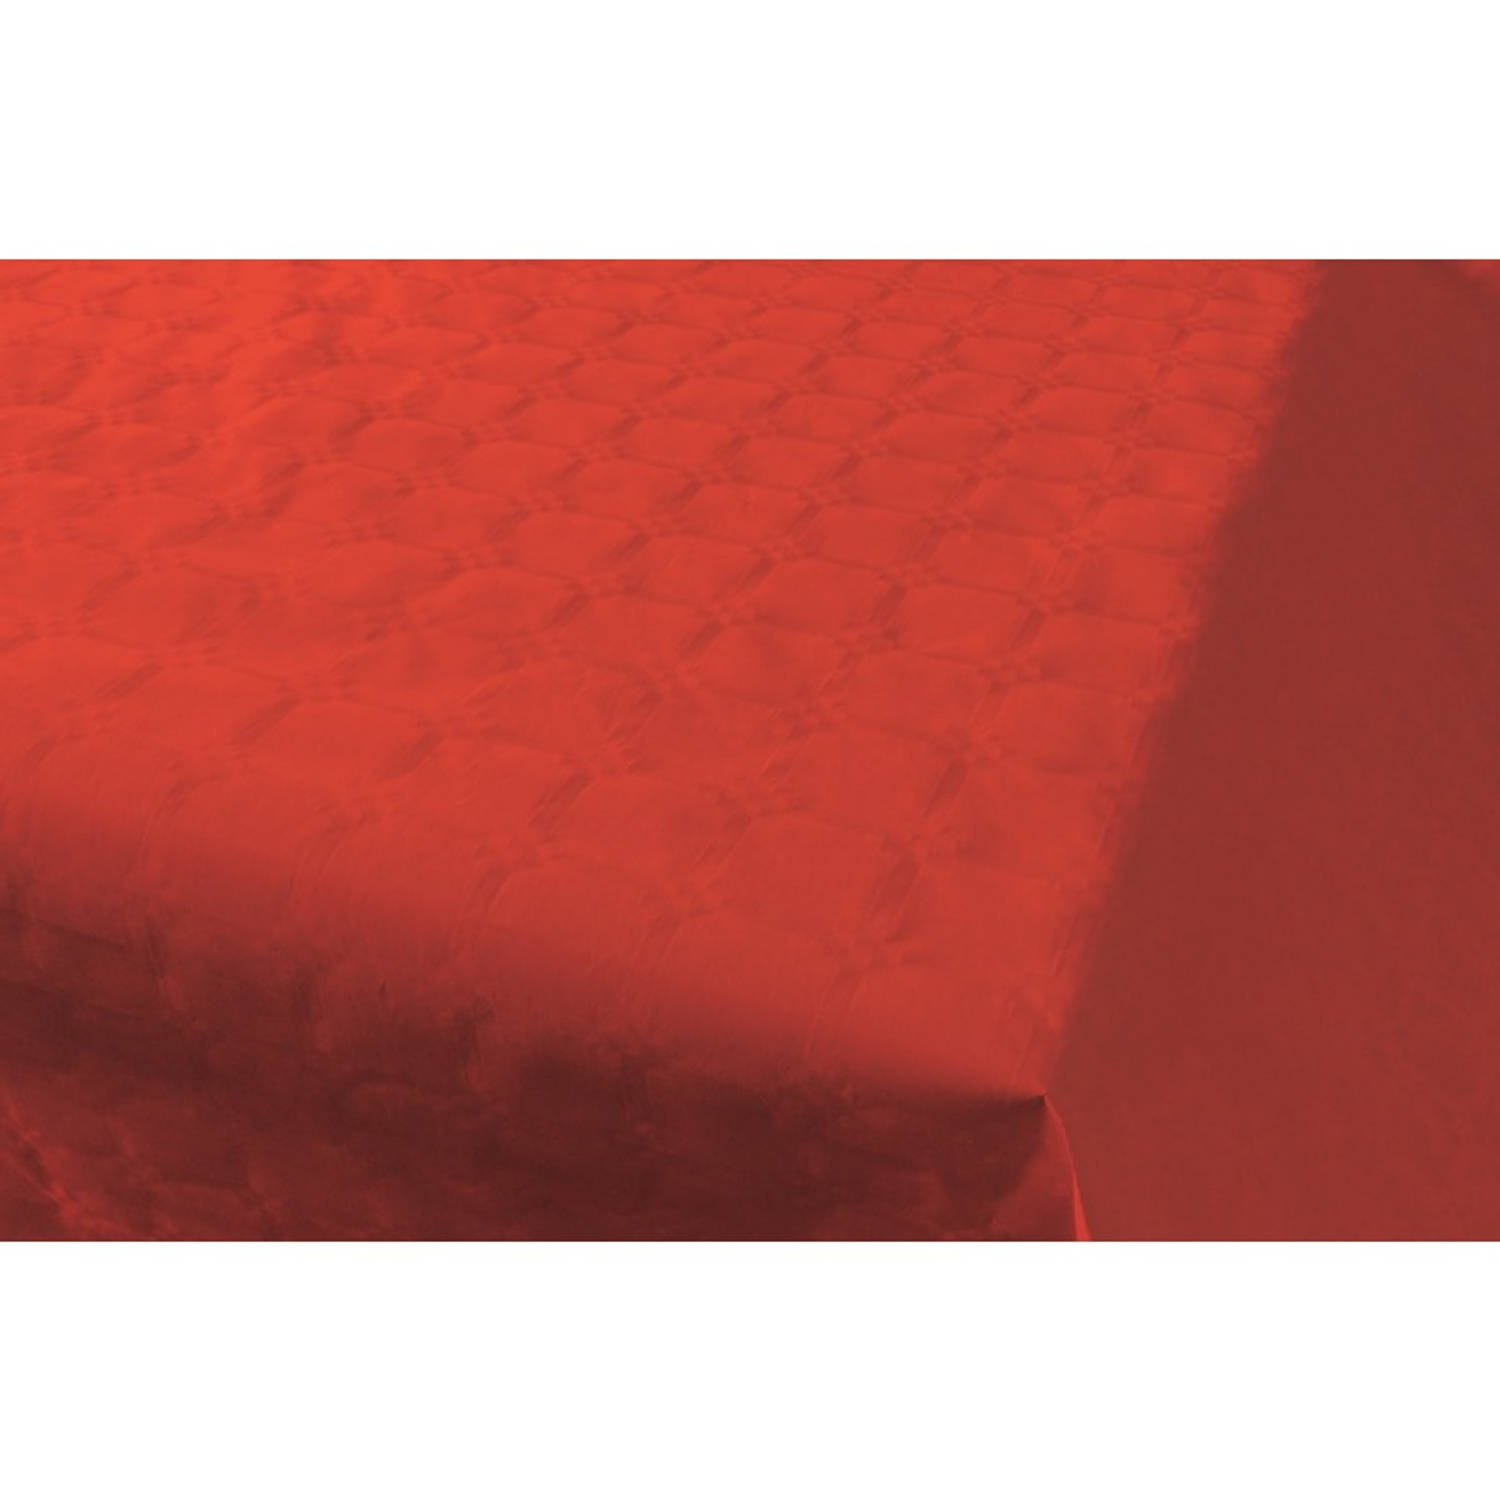 Oven medeklinker Deter Rood papieren tafellaken/tafelkleed 800 x 118 cm op rol - Feesttafelkleden  | Blokker